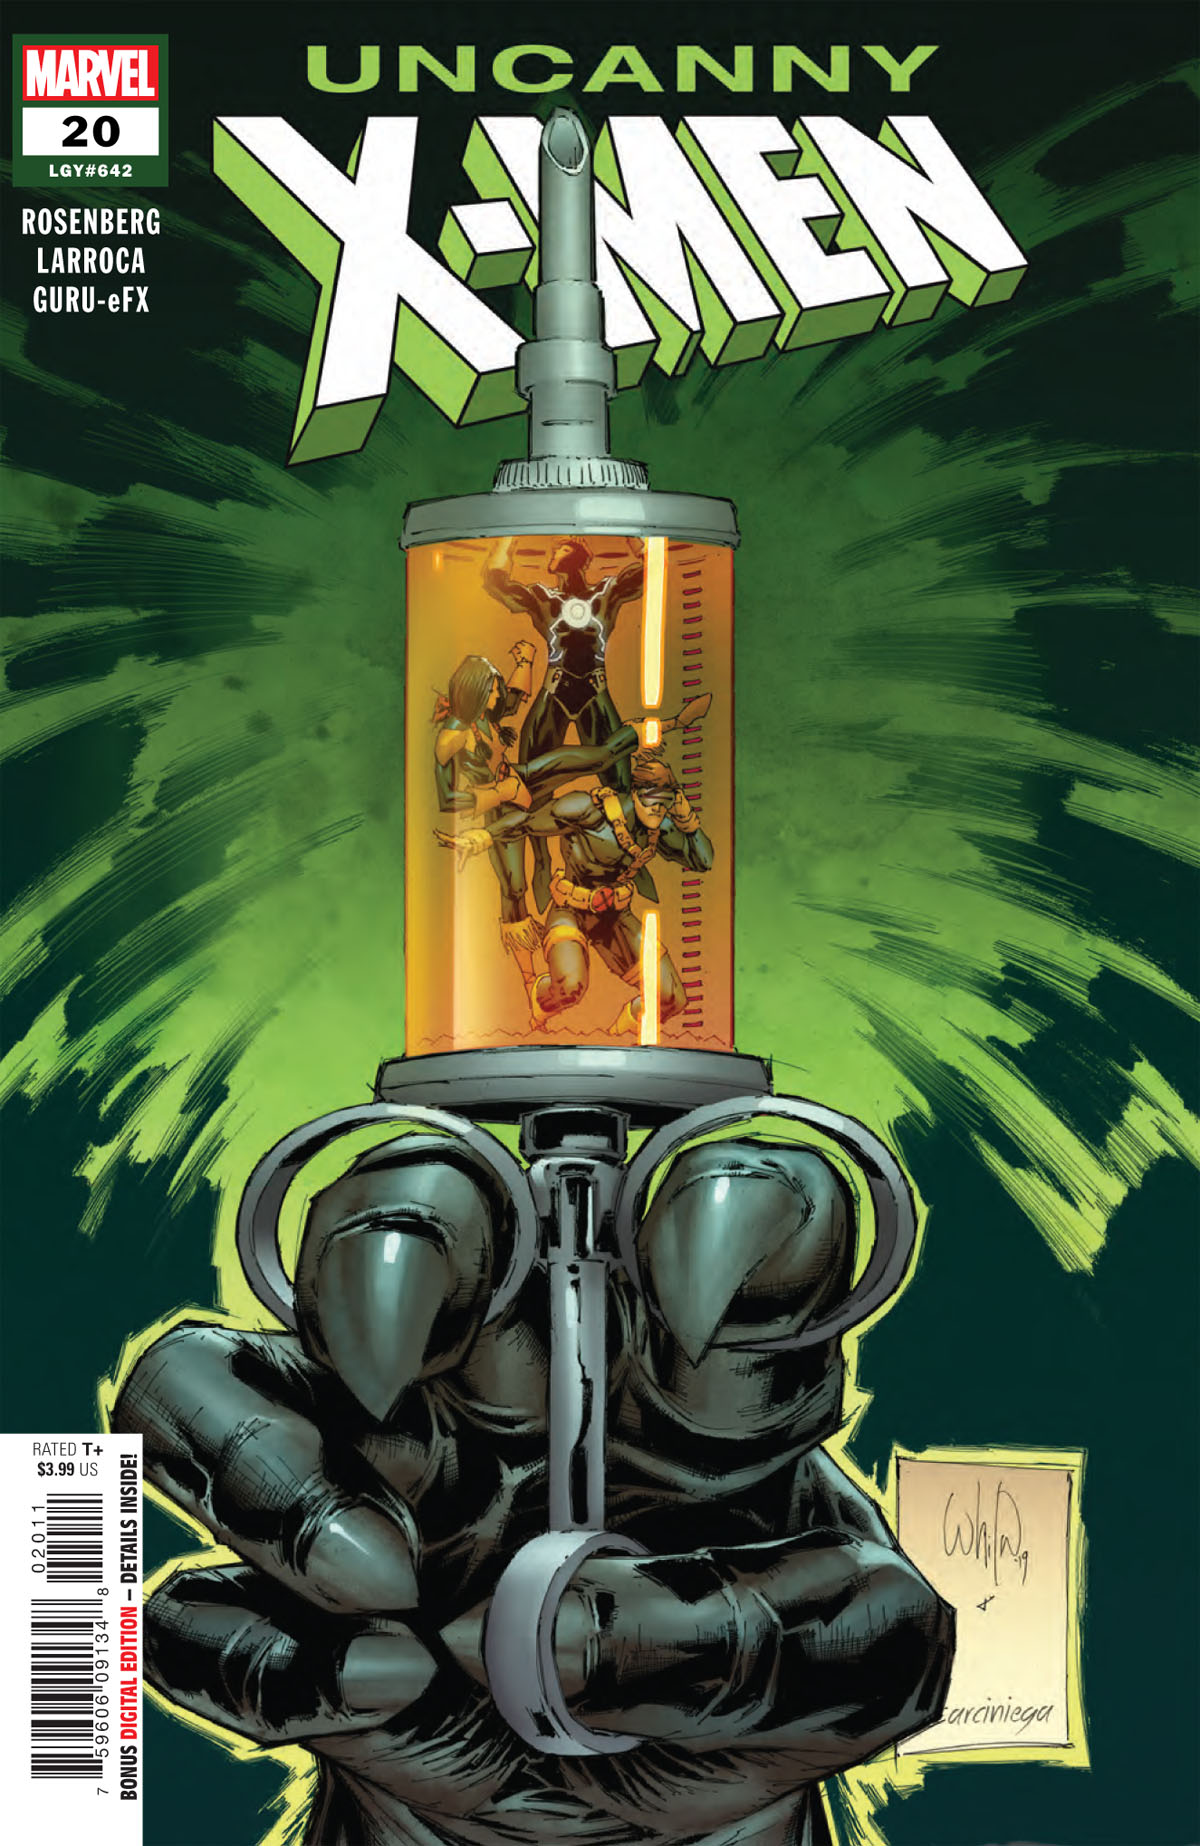 Uncanny X-Men #20 cover